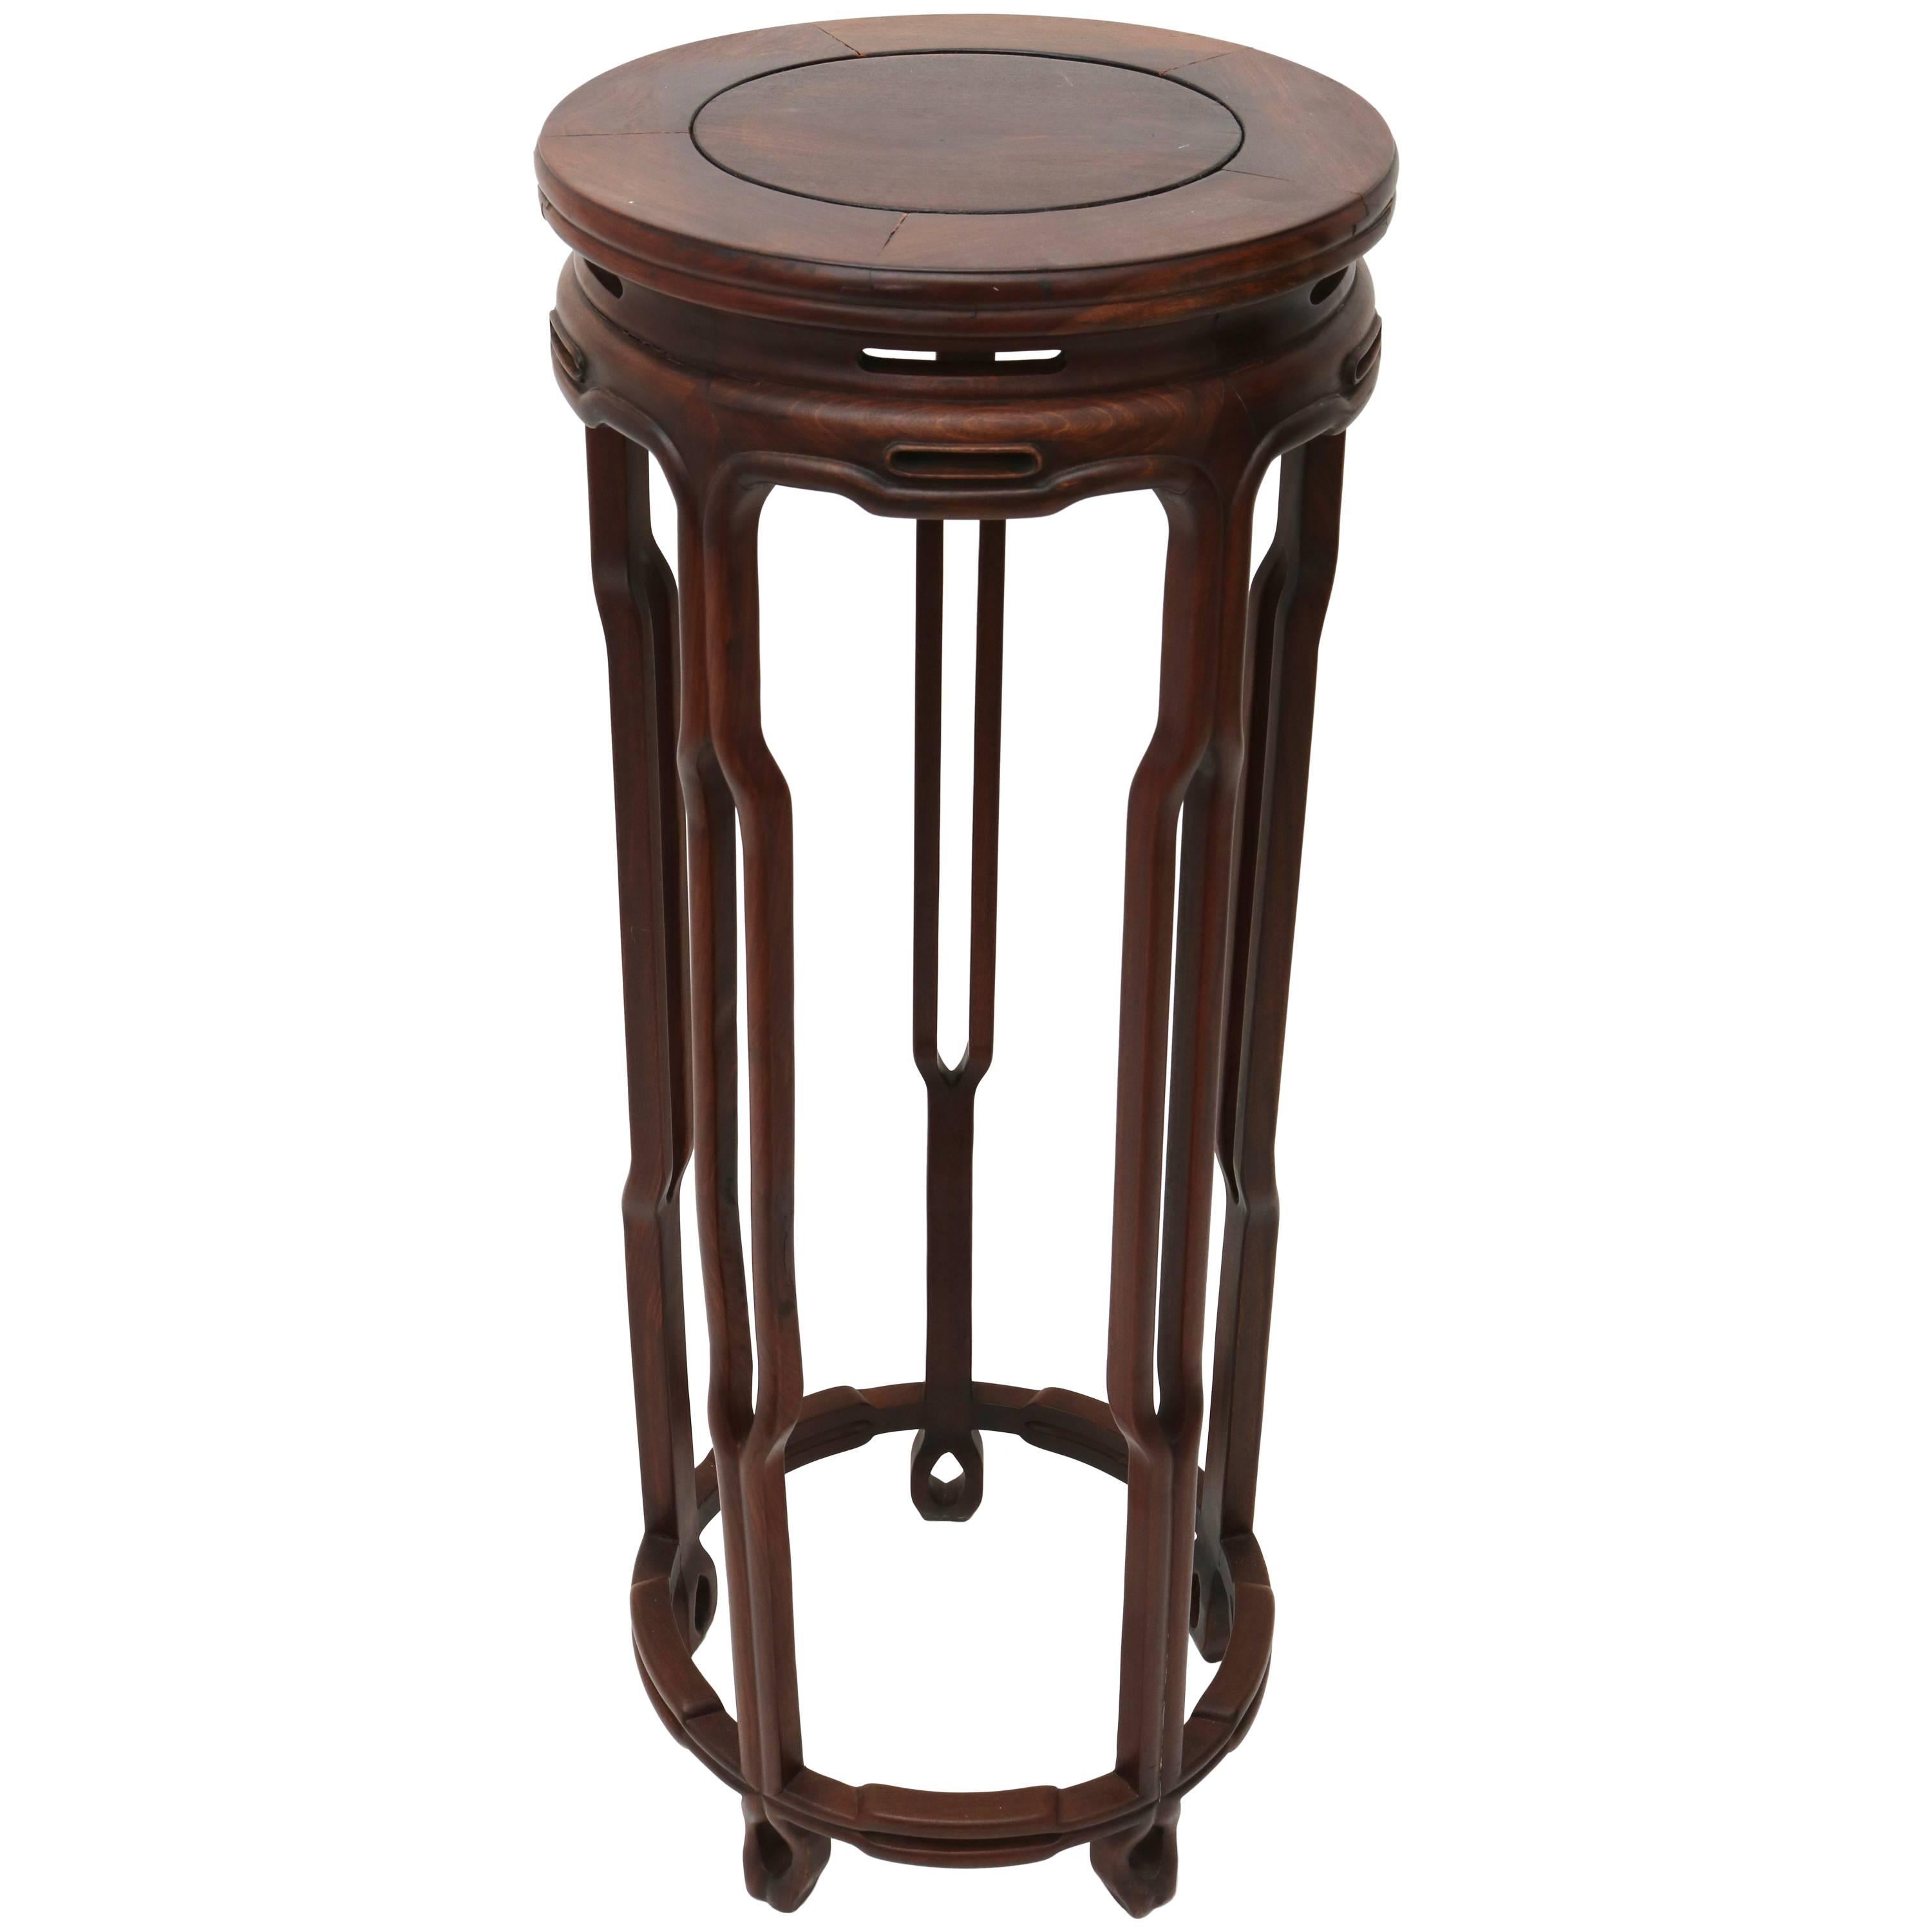 Circular-Form Chinese Rosewood Pedestal